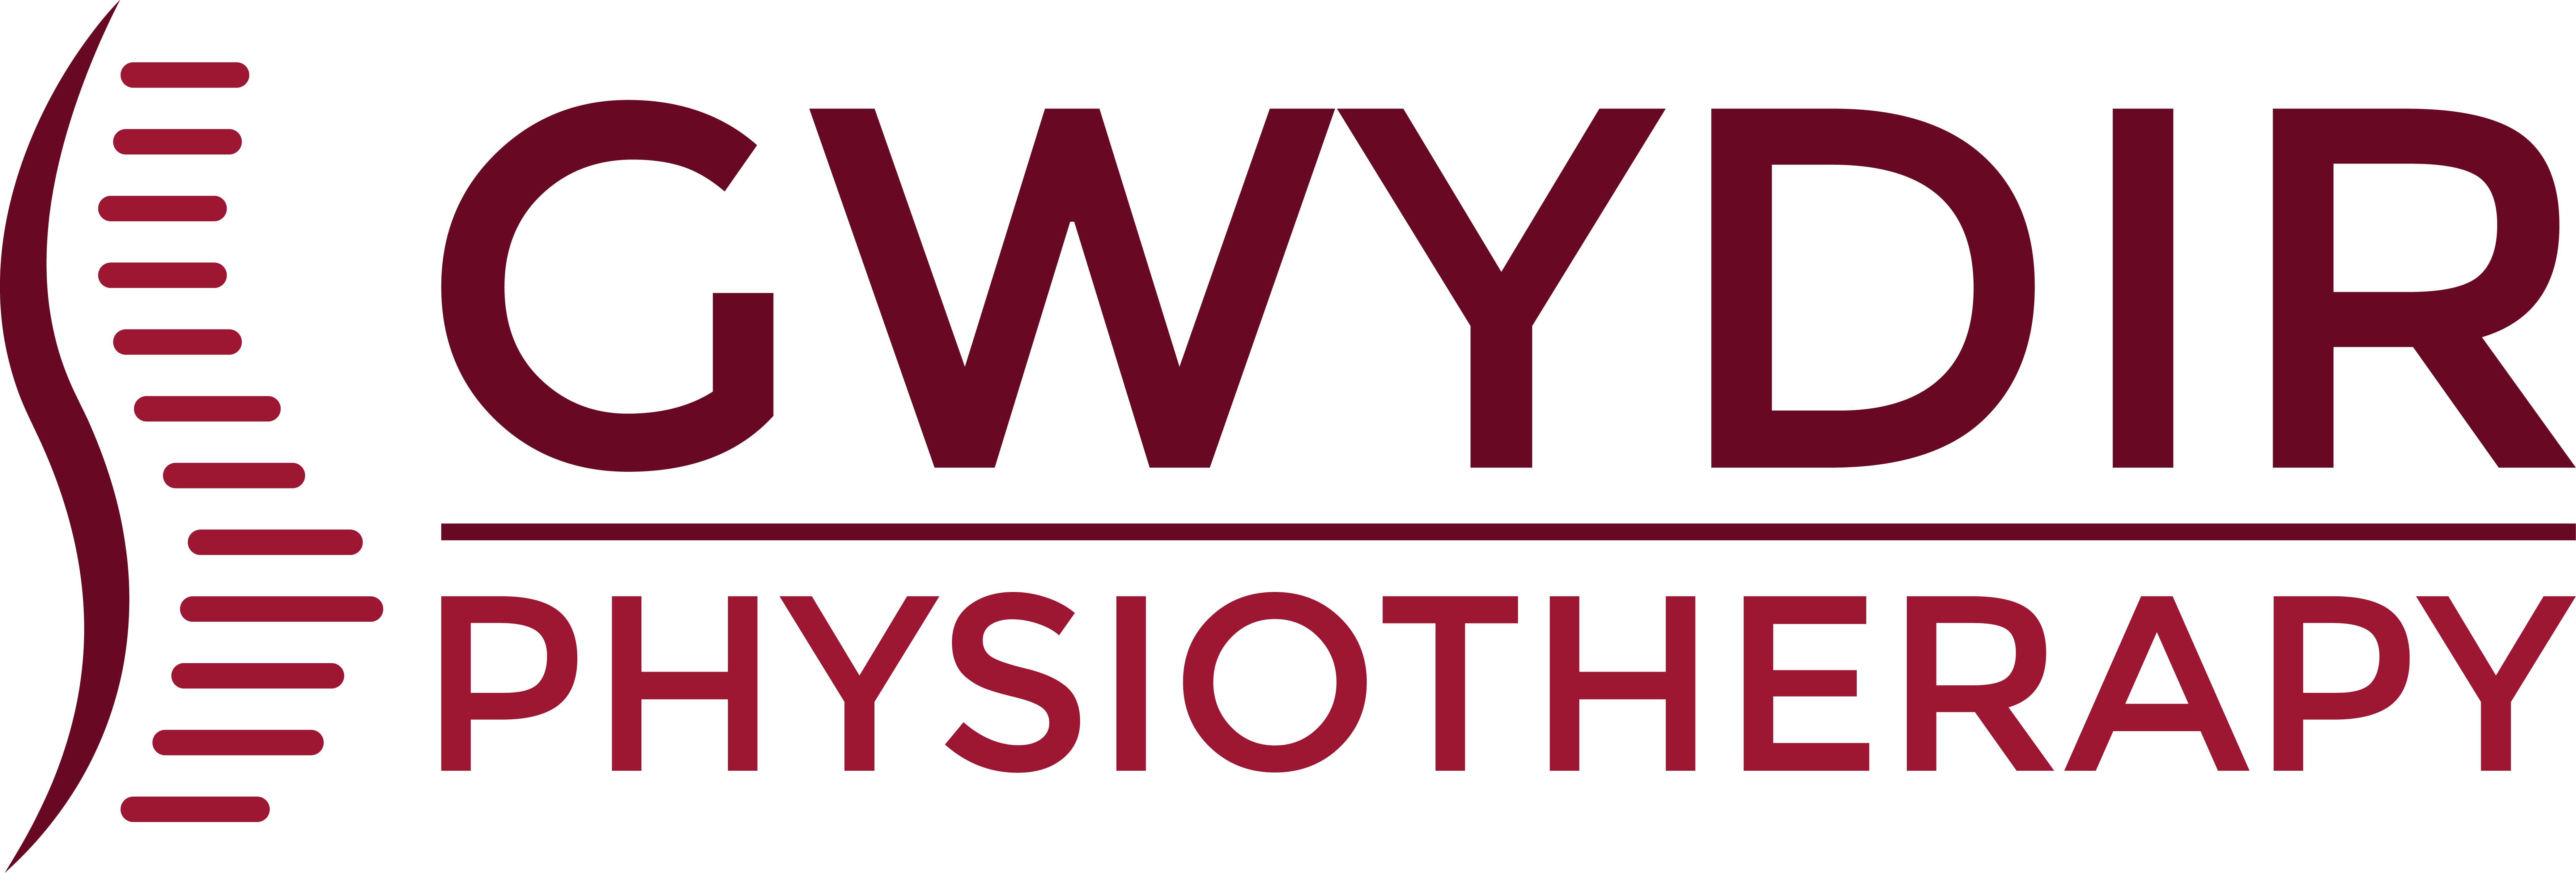 Gwydir Physiotherapy Logo